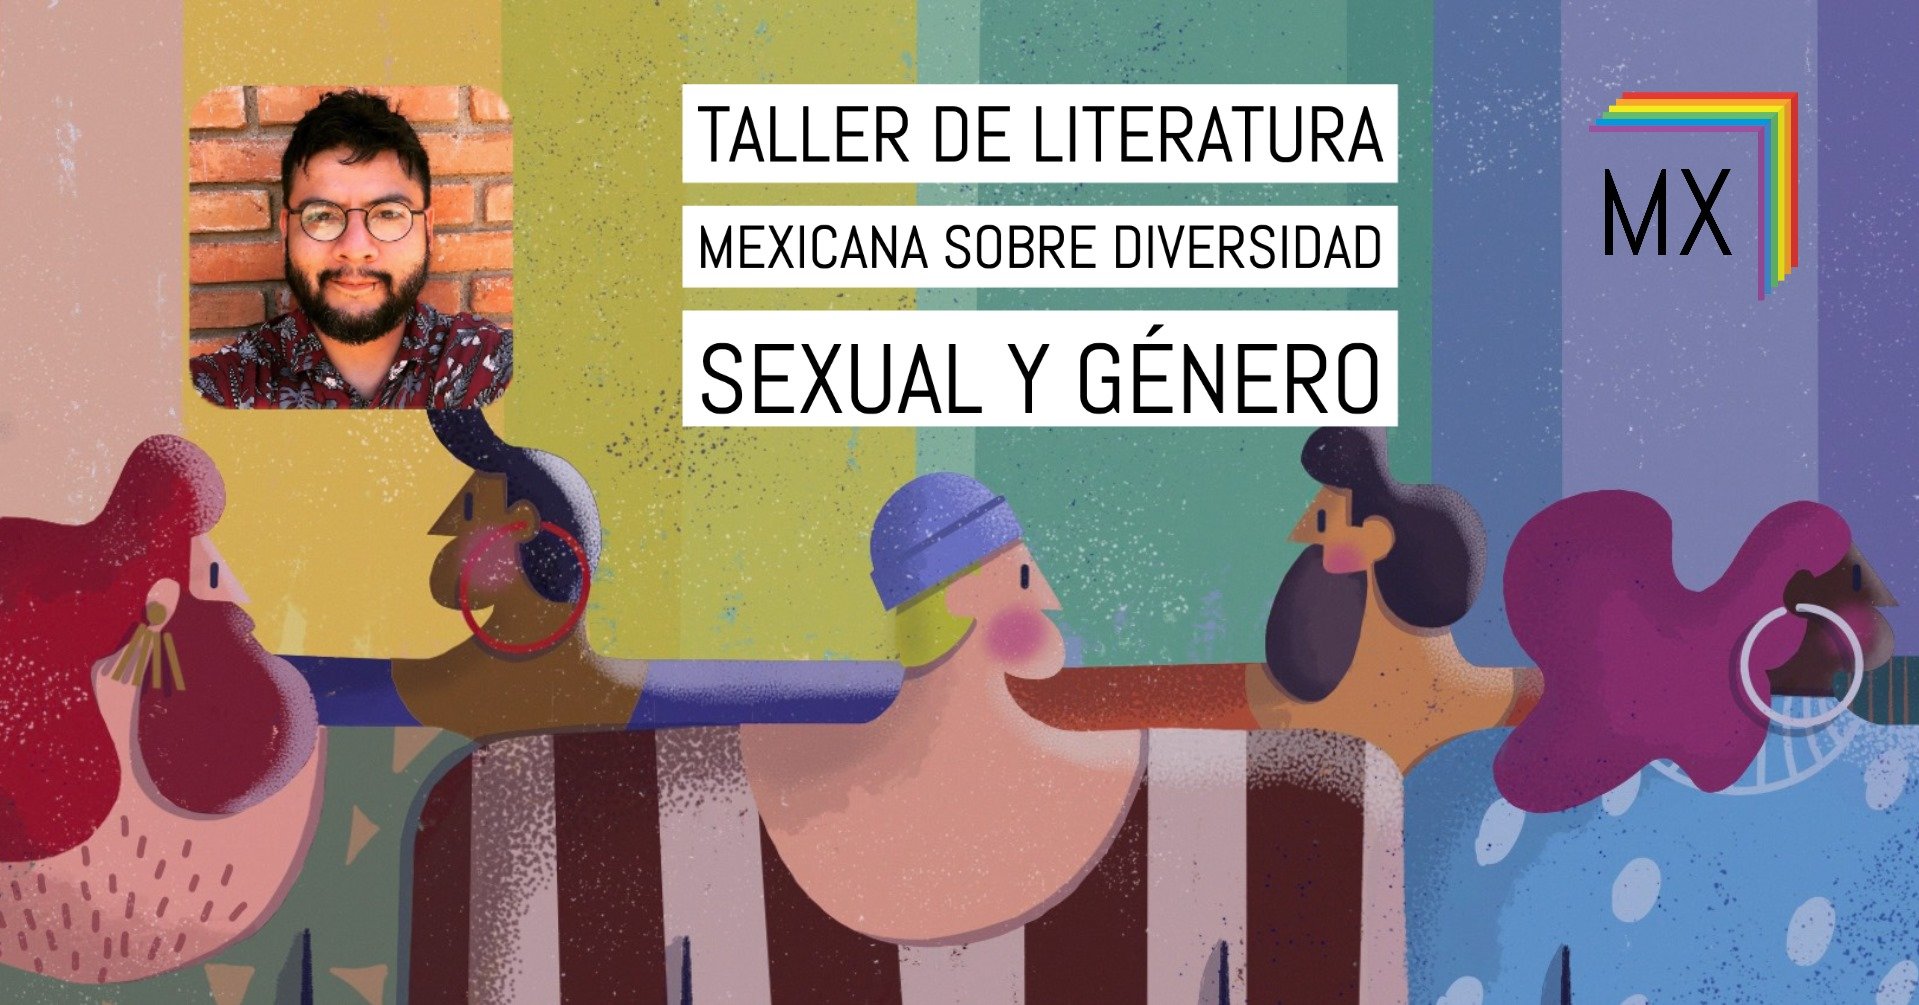 taller de literatura sobre diversidad sexual y género